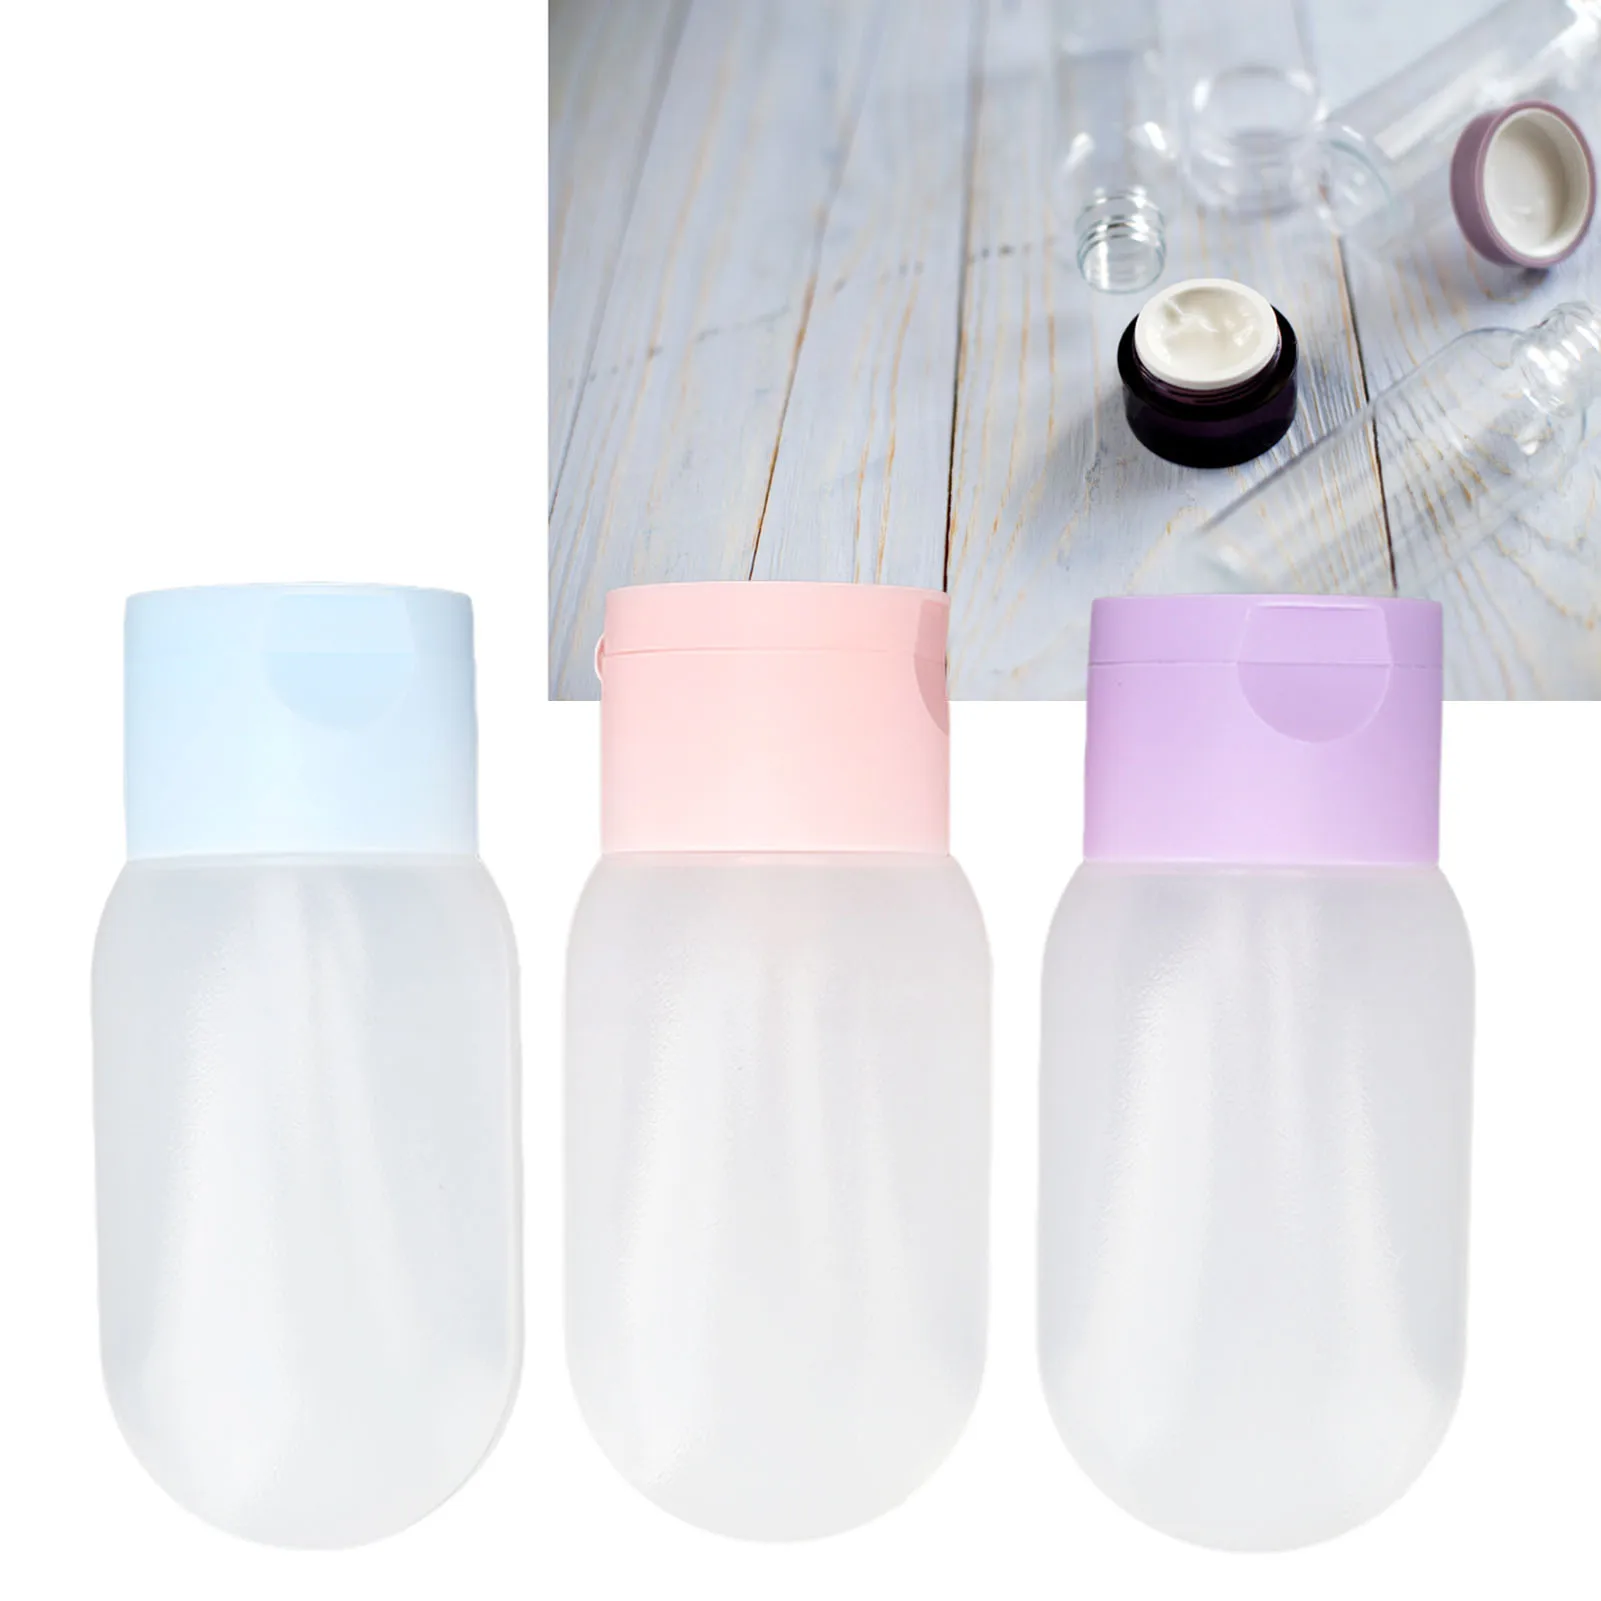 Мягкие дорожные бутылочки, защищенные от протечек, Многоразового использования, Портативный Сжимаемый контейнер для туалетных принадлежностей, косметики для шампуня, лосьона, 3 шт.